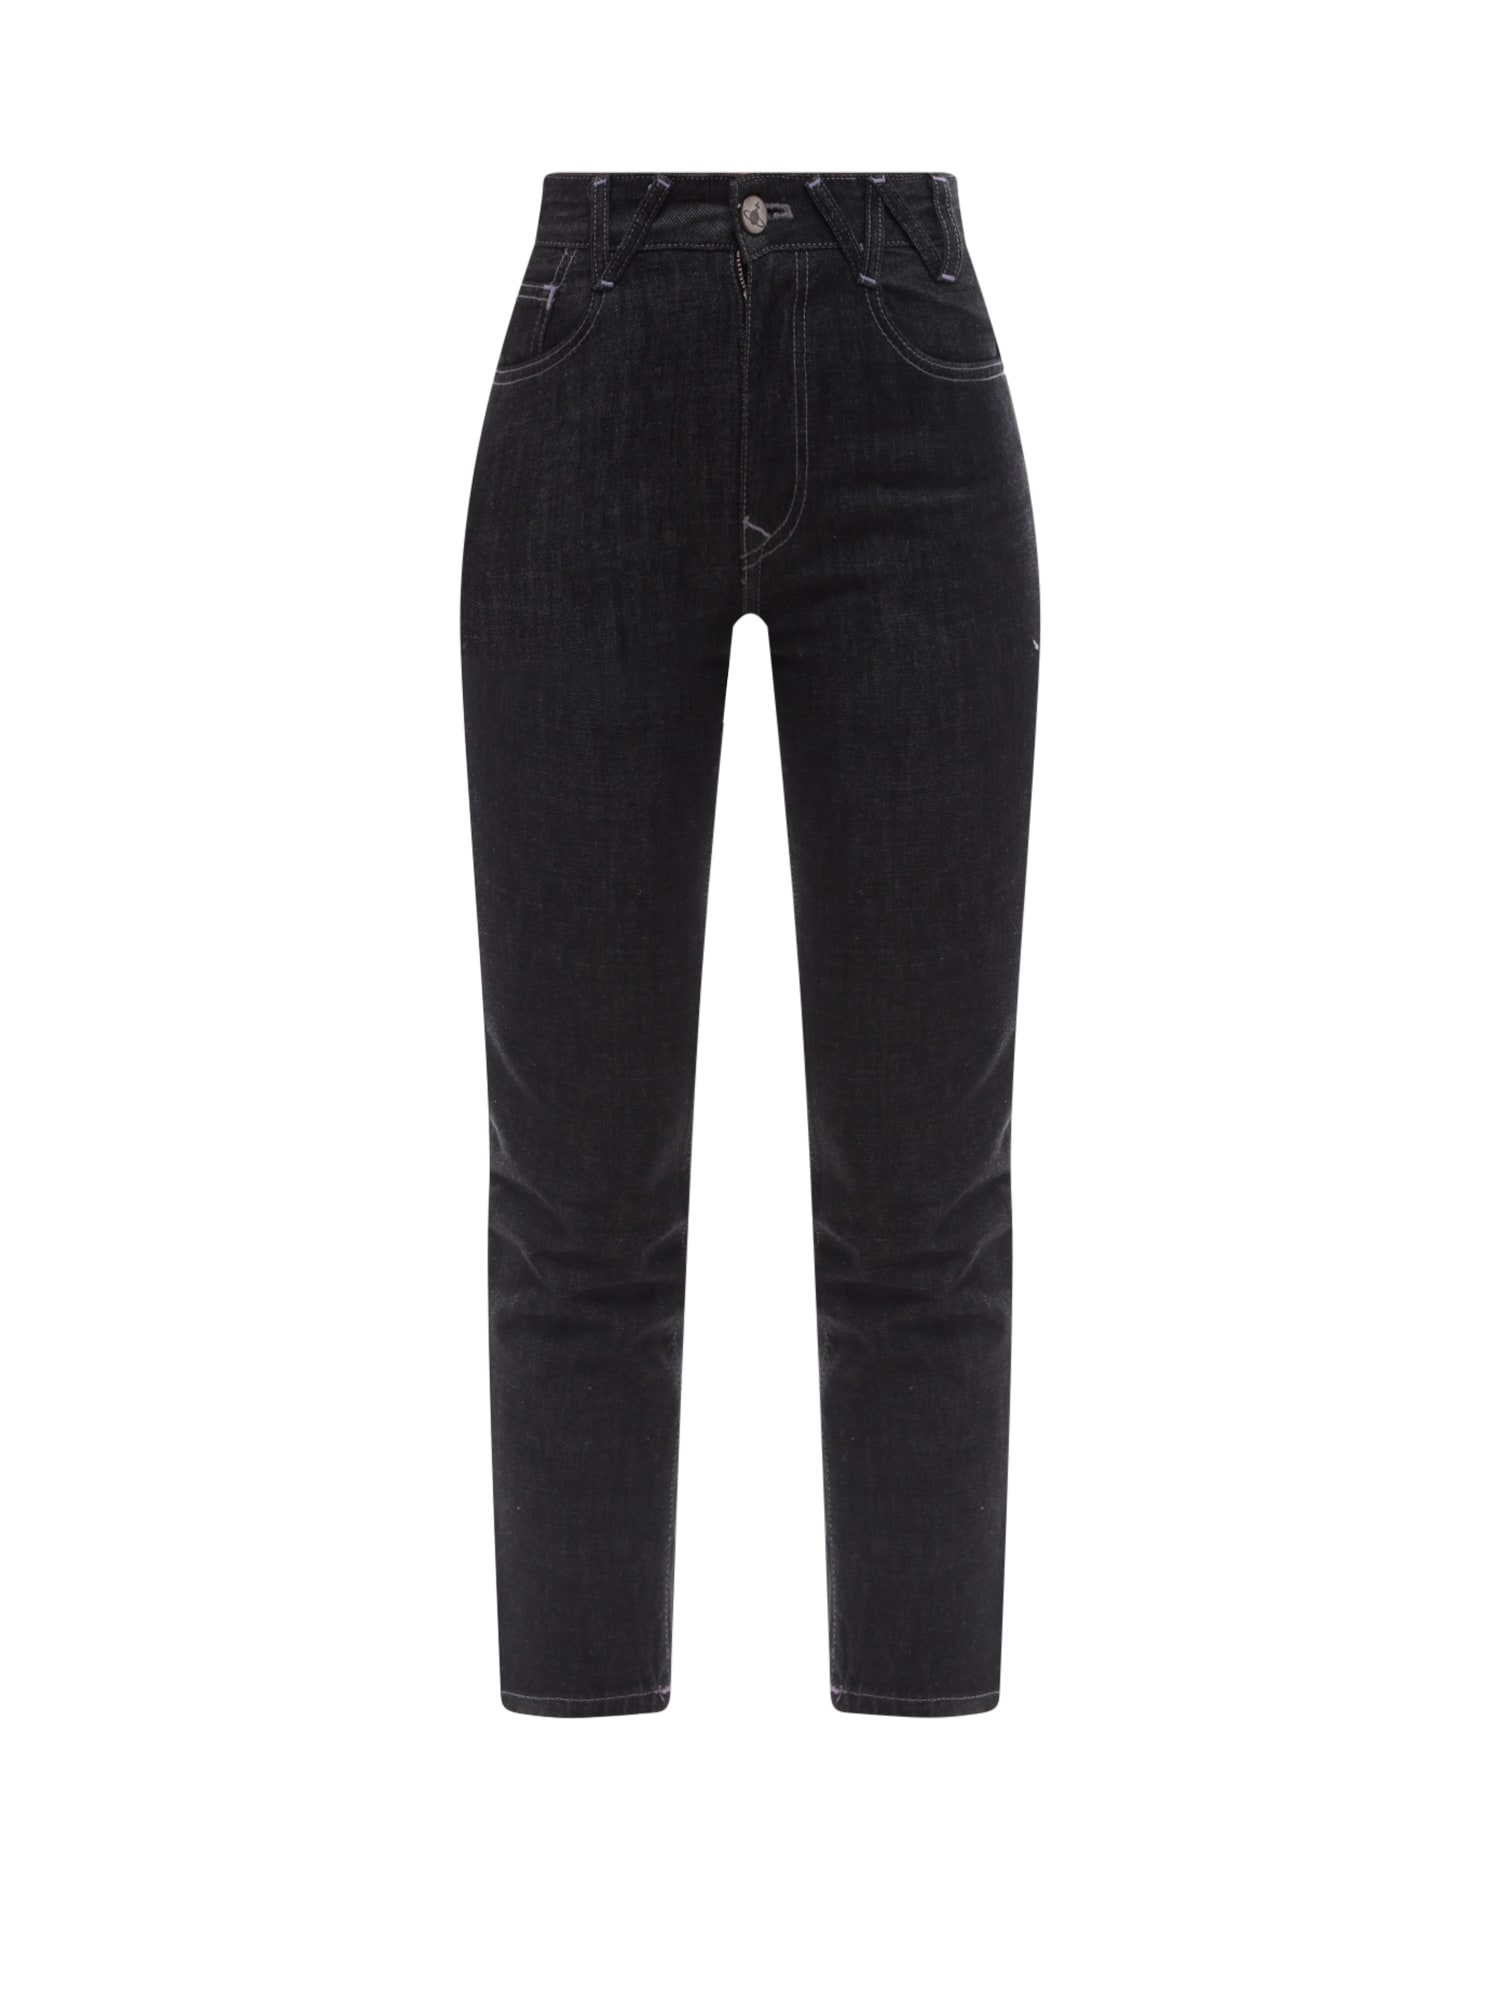 Vivienne Westwood Harris Jeans